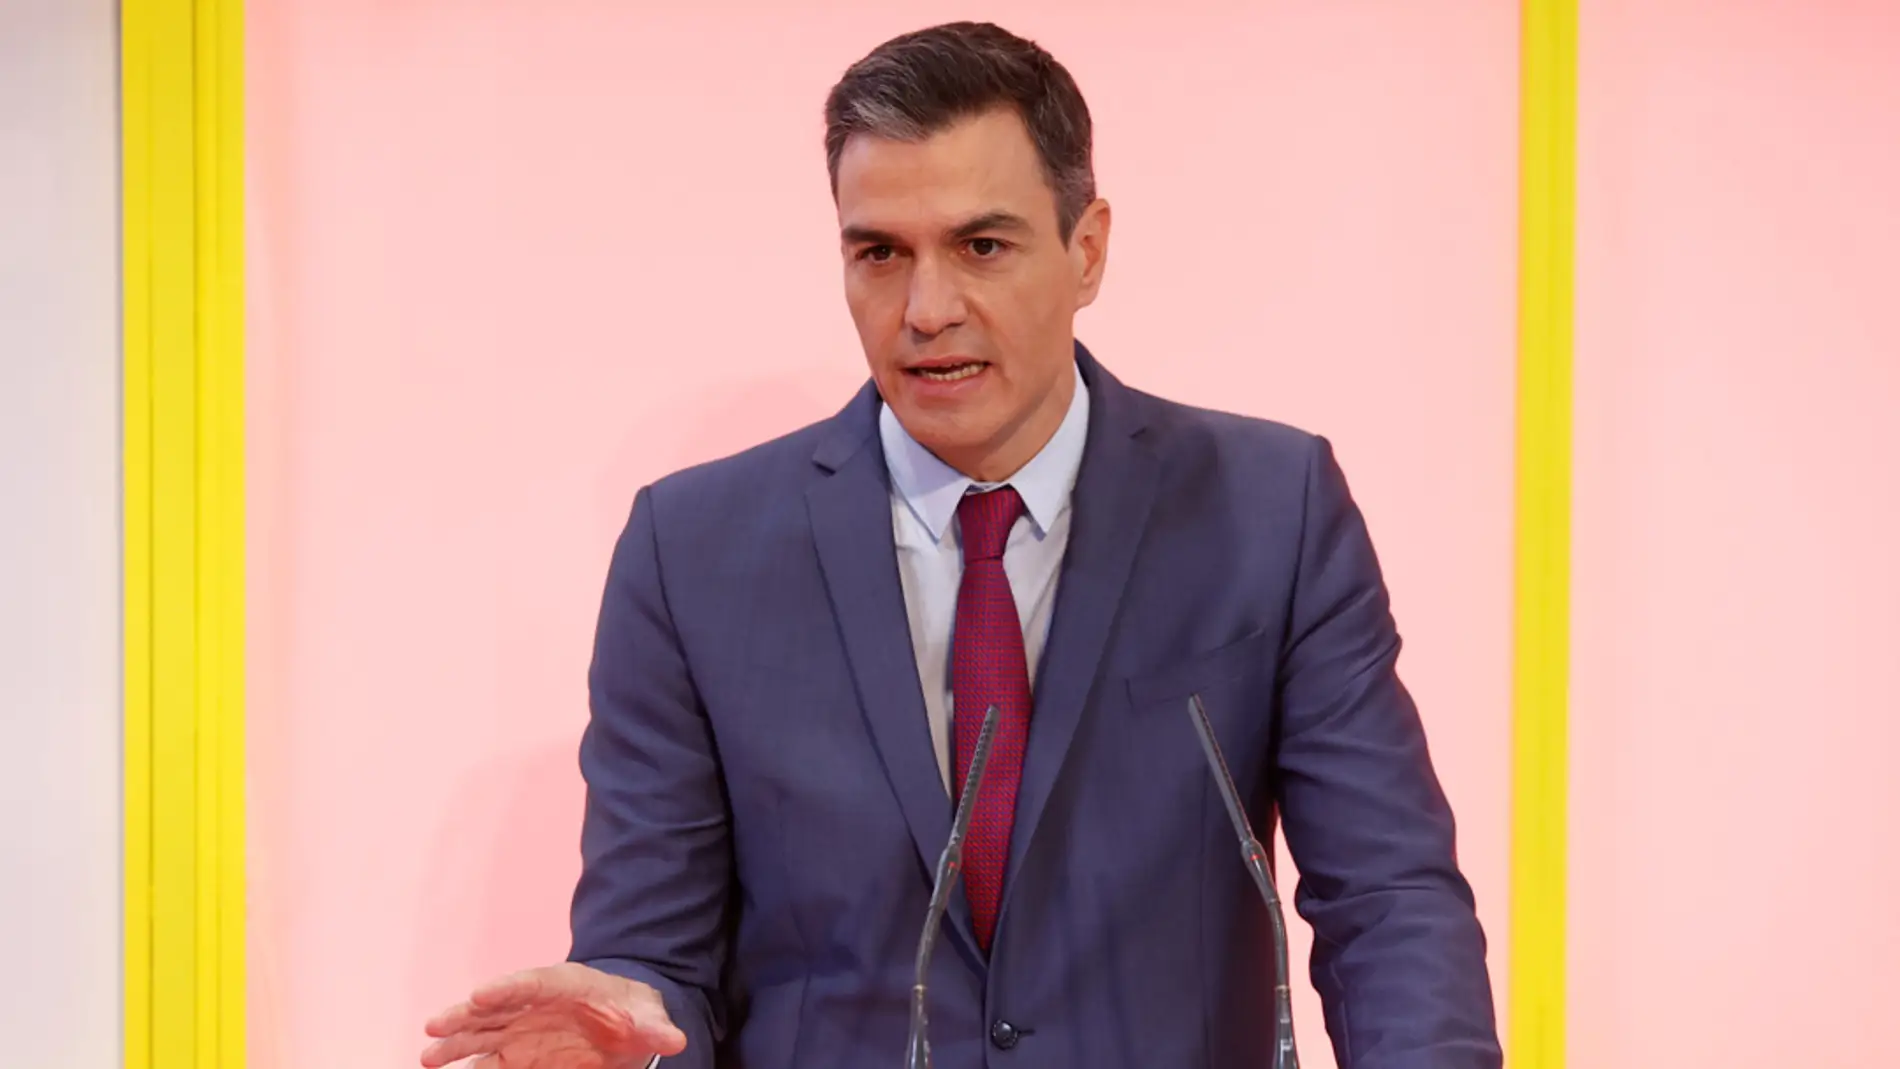 El presidente del Gobierno, Pedro Sánchez, durante una comparecencia